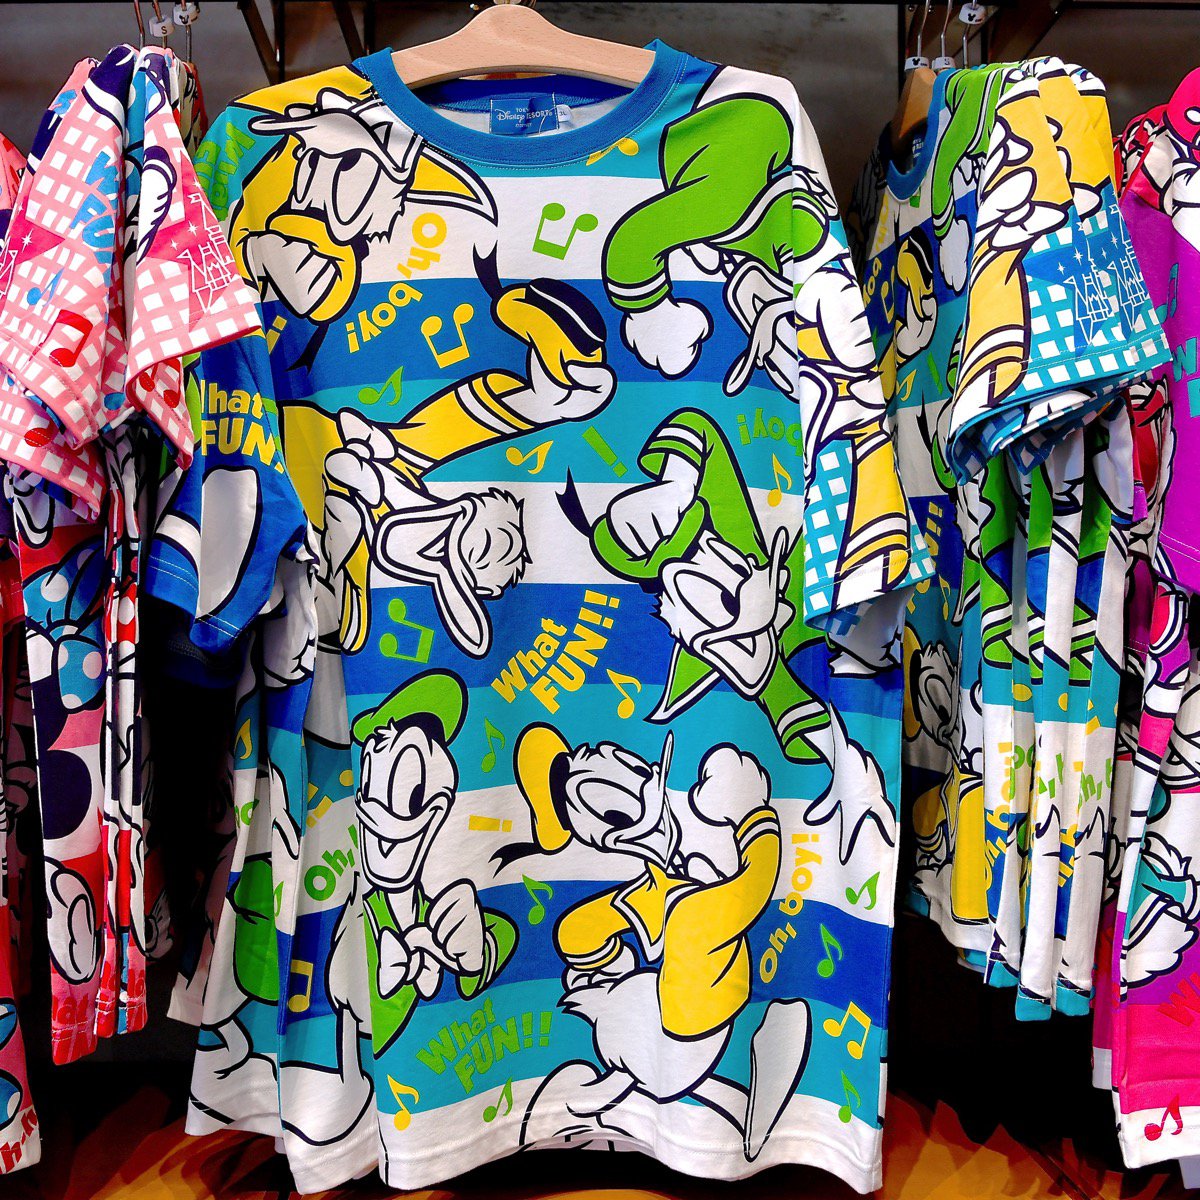 Mezzomikiのディズニーブログ ミッキーたちの総柄デザイン 東京ディズニーランド おそろいtシャツ 新発売 サイズも揃っているので 家族やお友達とおそろコーデが楽しめます 詳しくは T Co Gk5tefwhrj